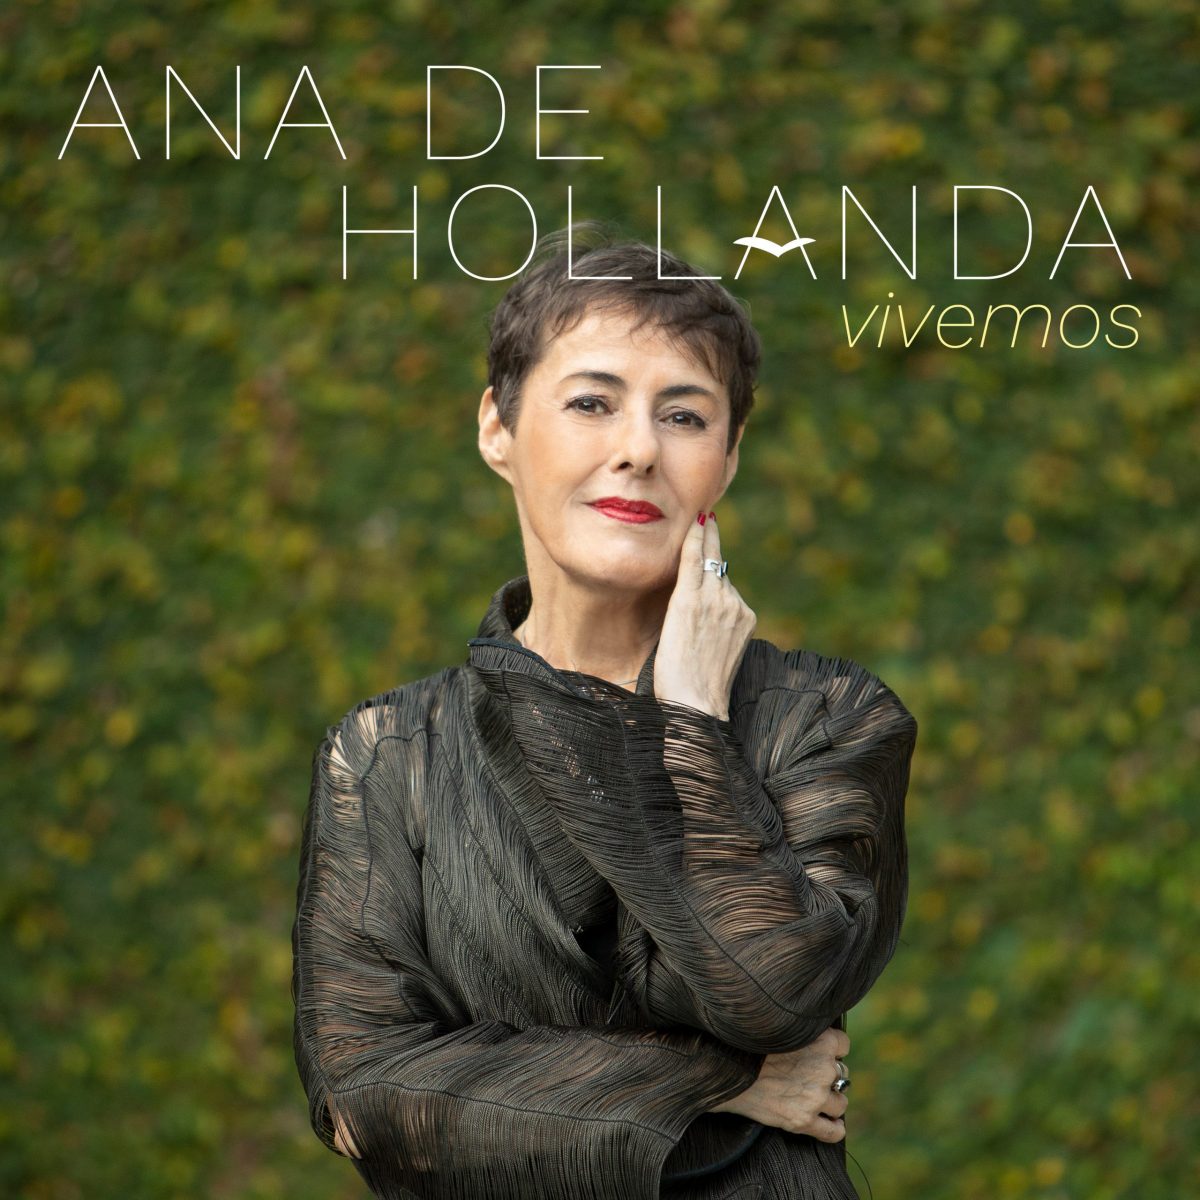 revistaprosaversoearte.com - 'Vivemos', álbum de Ana de Hollanda, lançado pela Biscoito Fino